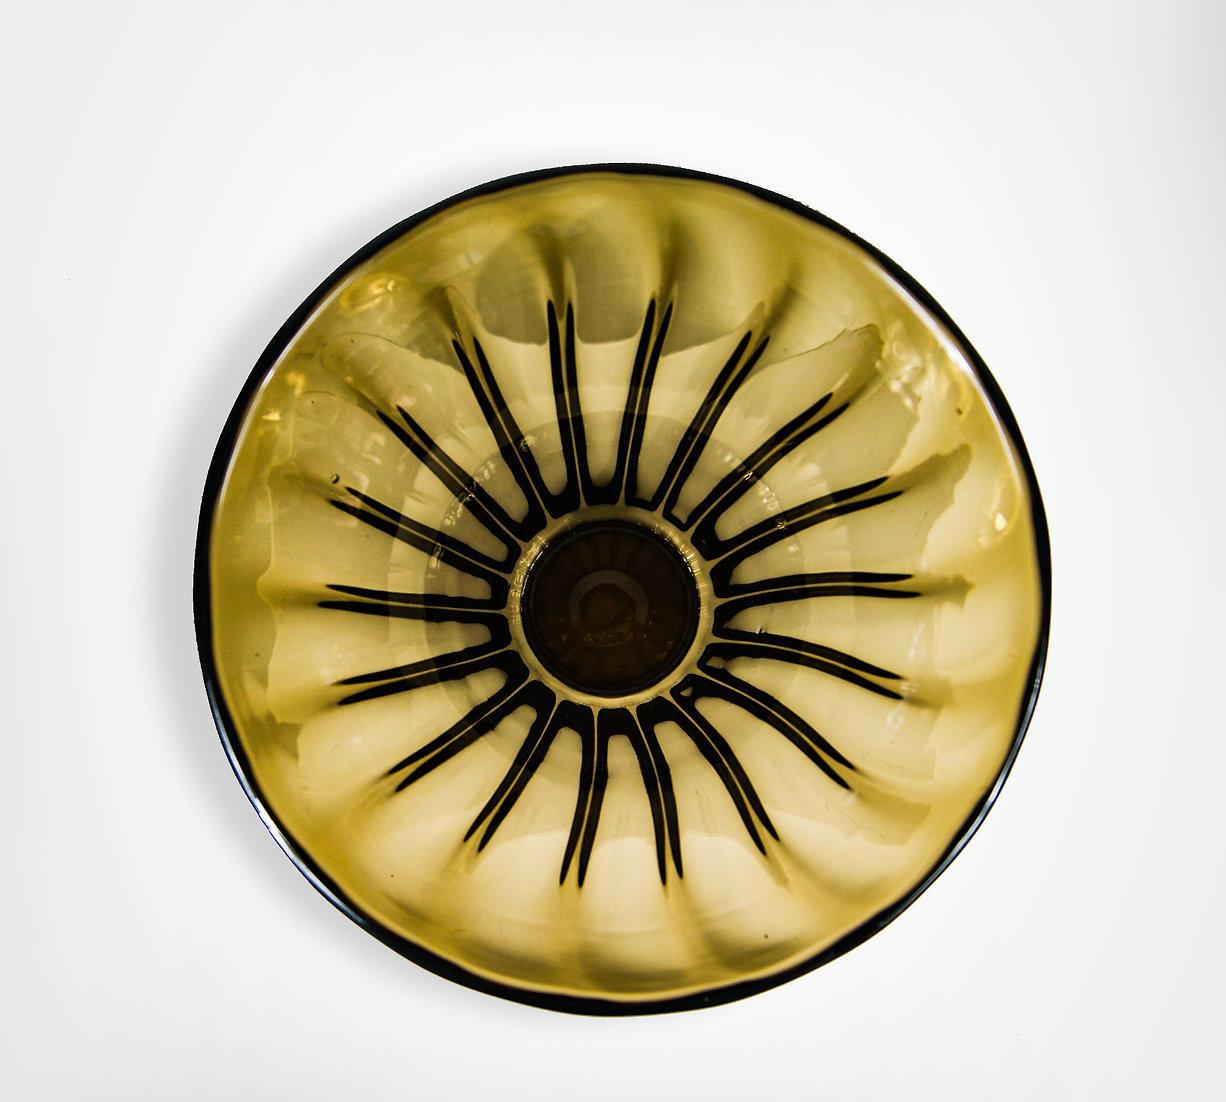 Other Daum Nancy France 1930s Amber Glass Crystal Vase 4.25kg For Sale